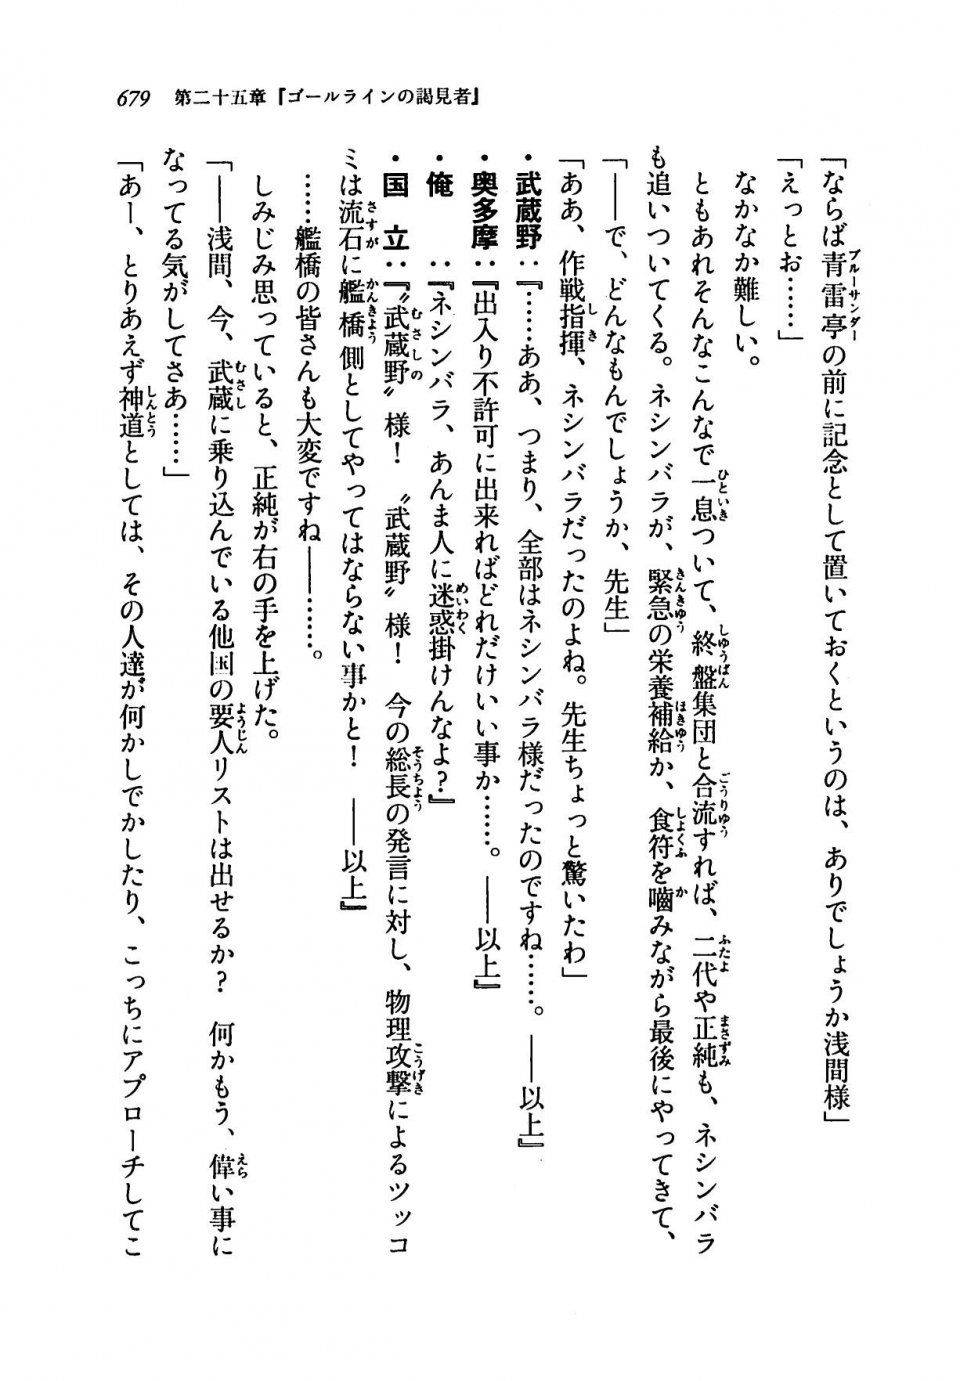 Kyoukai Senjou no Horizon LN Vol 19(8A) - Photo #679